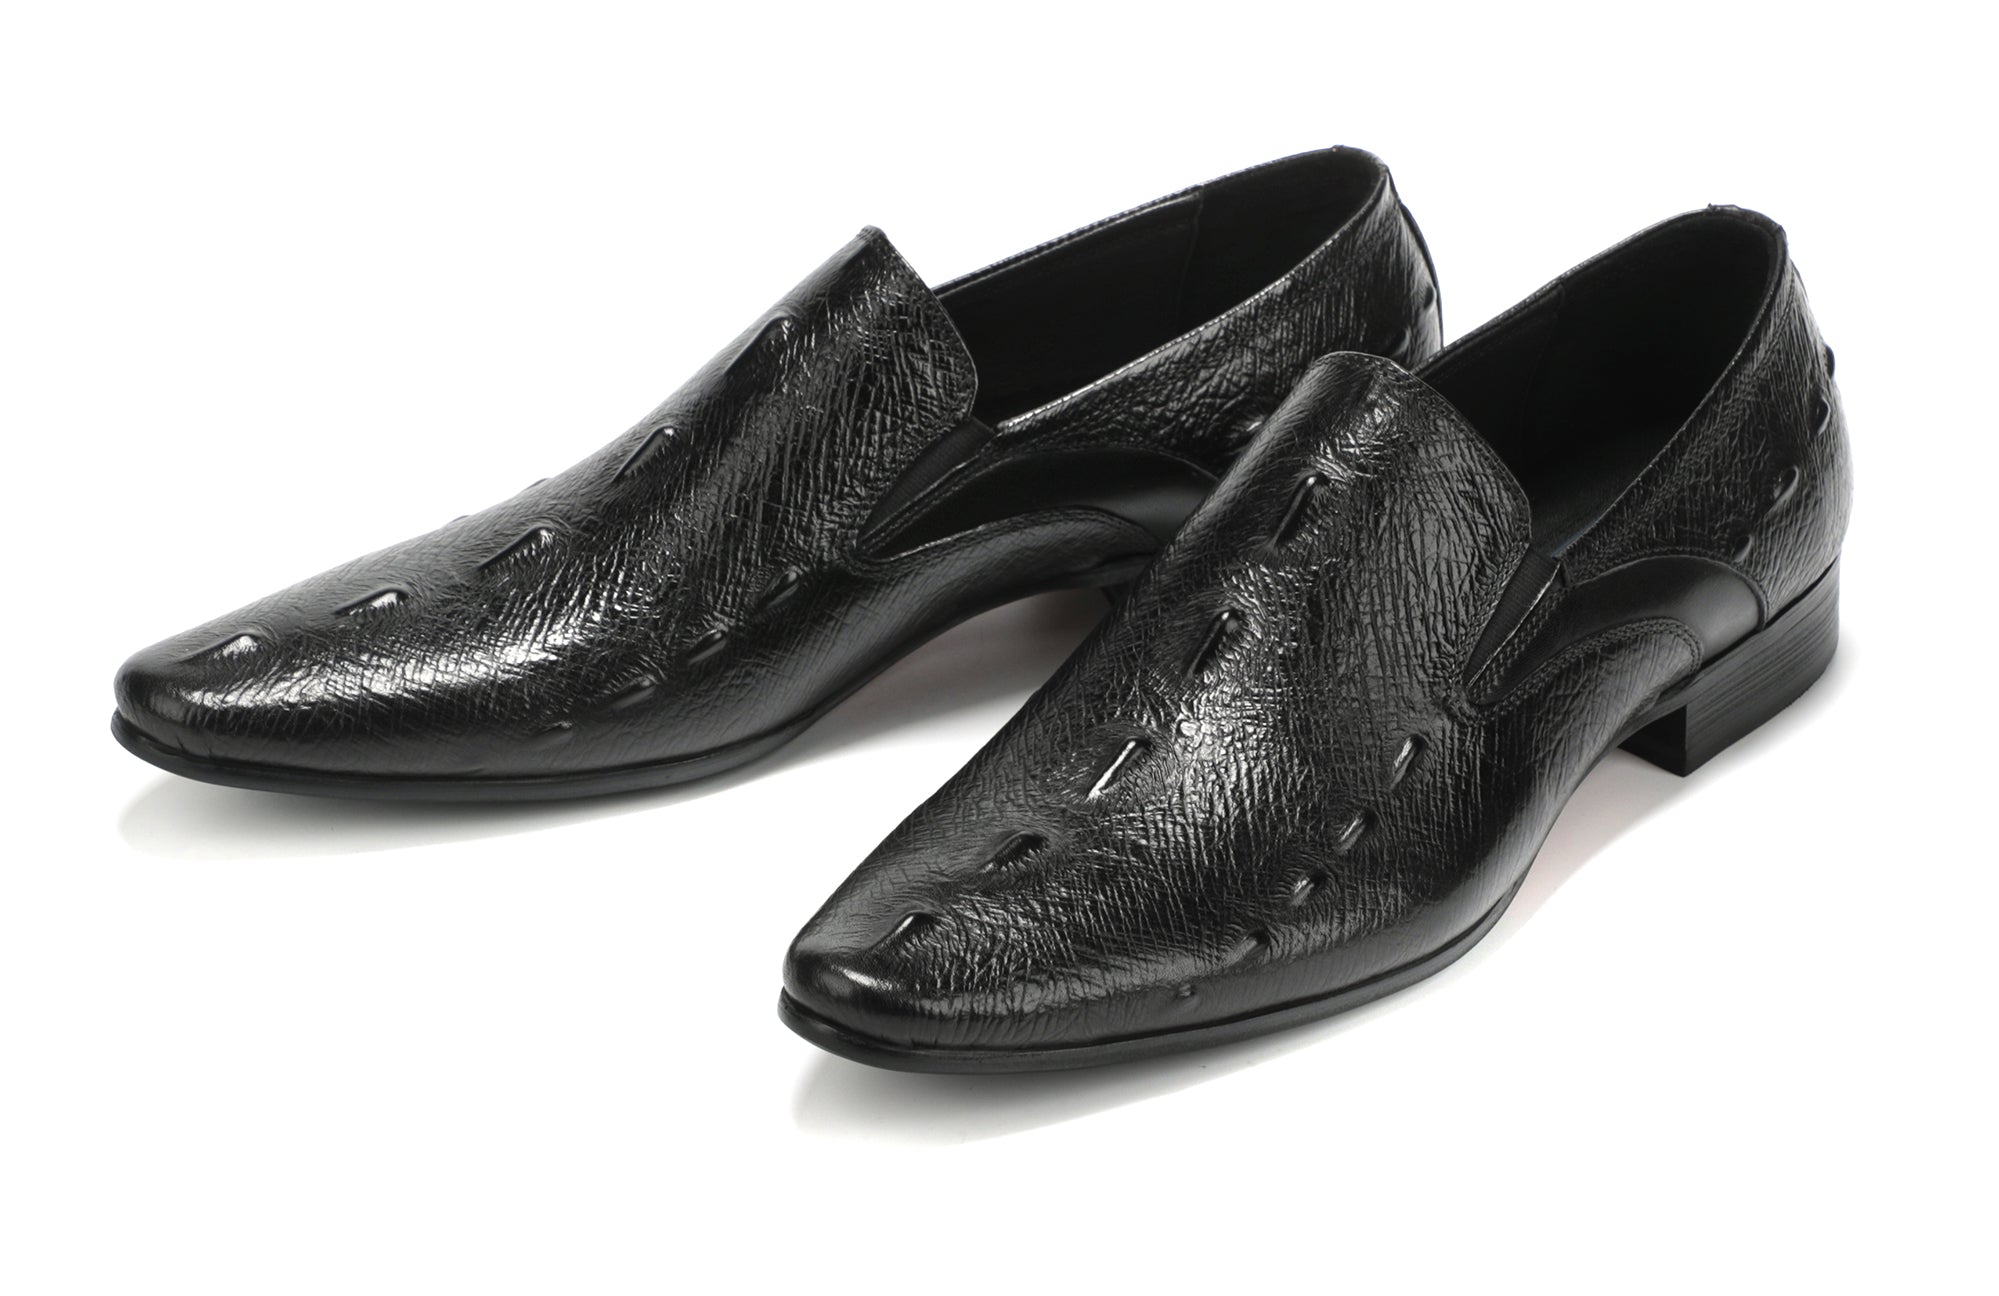 Men's Alligator Slip On Leather Loafers